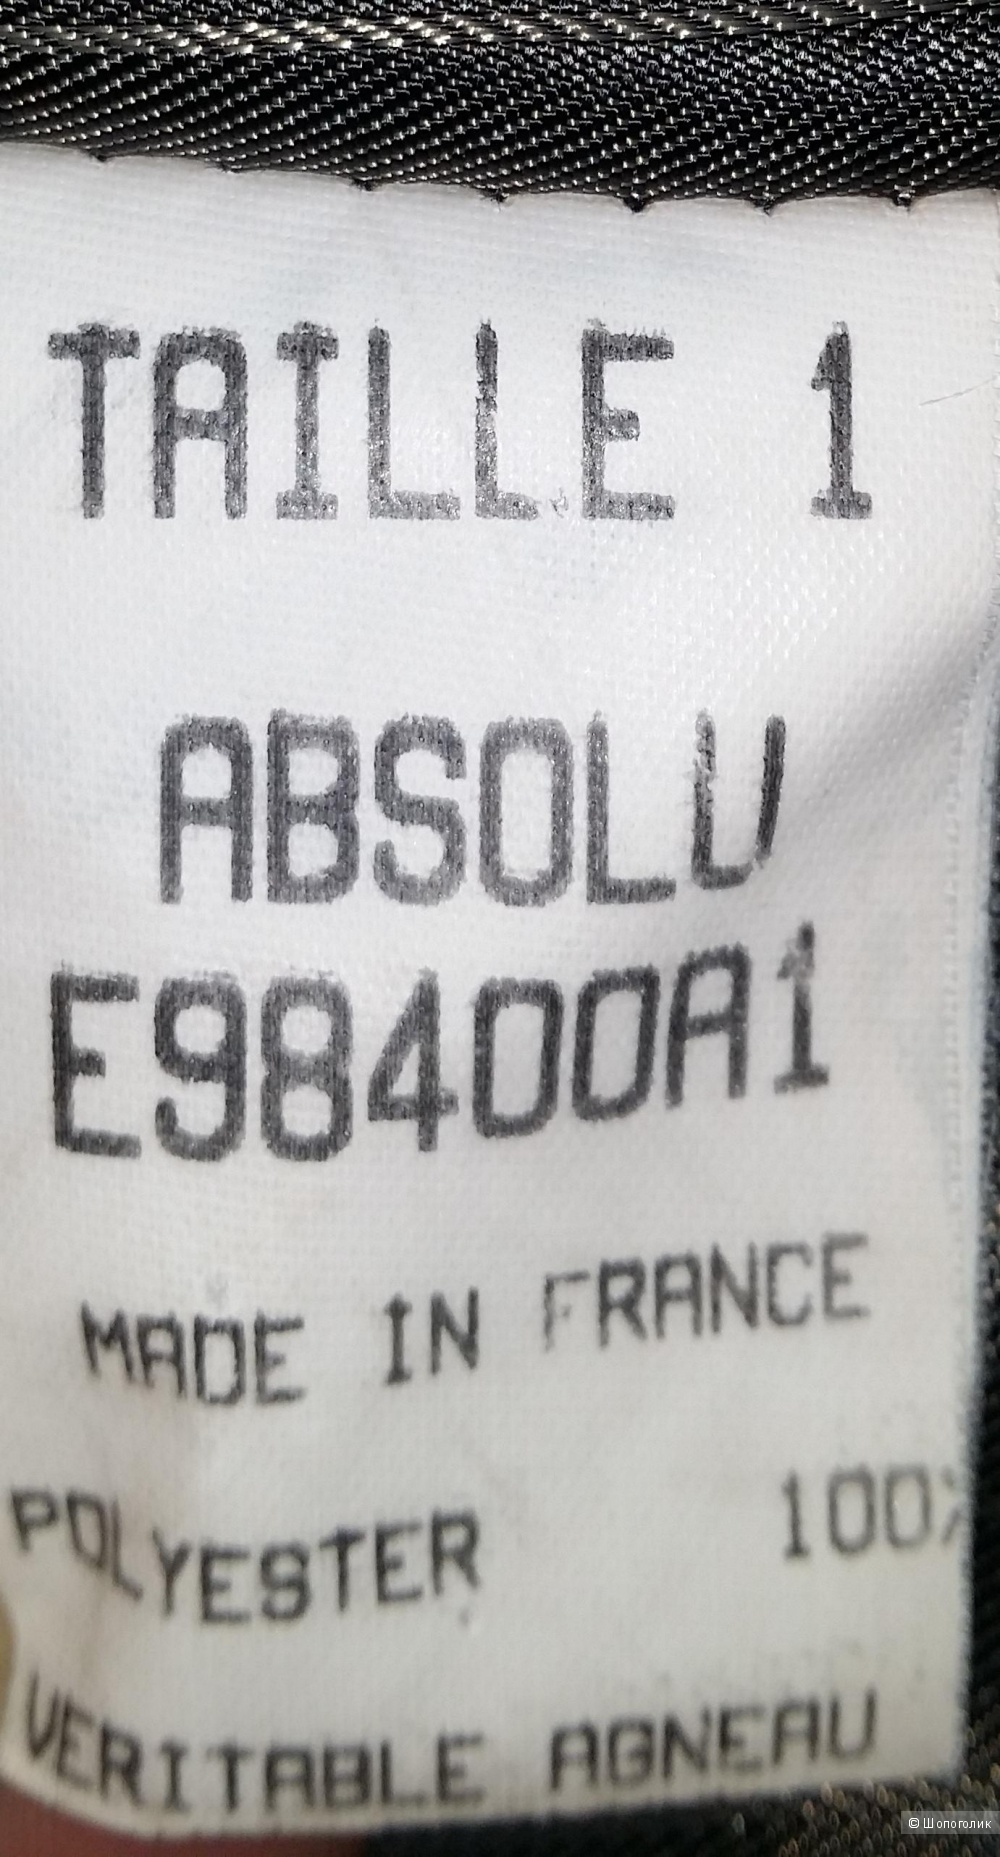 Классический приталенный пиджак ABSOLU Paris  42- 44 размера